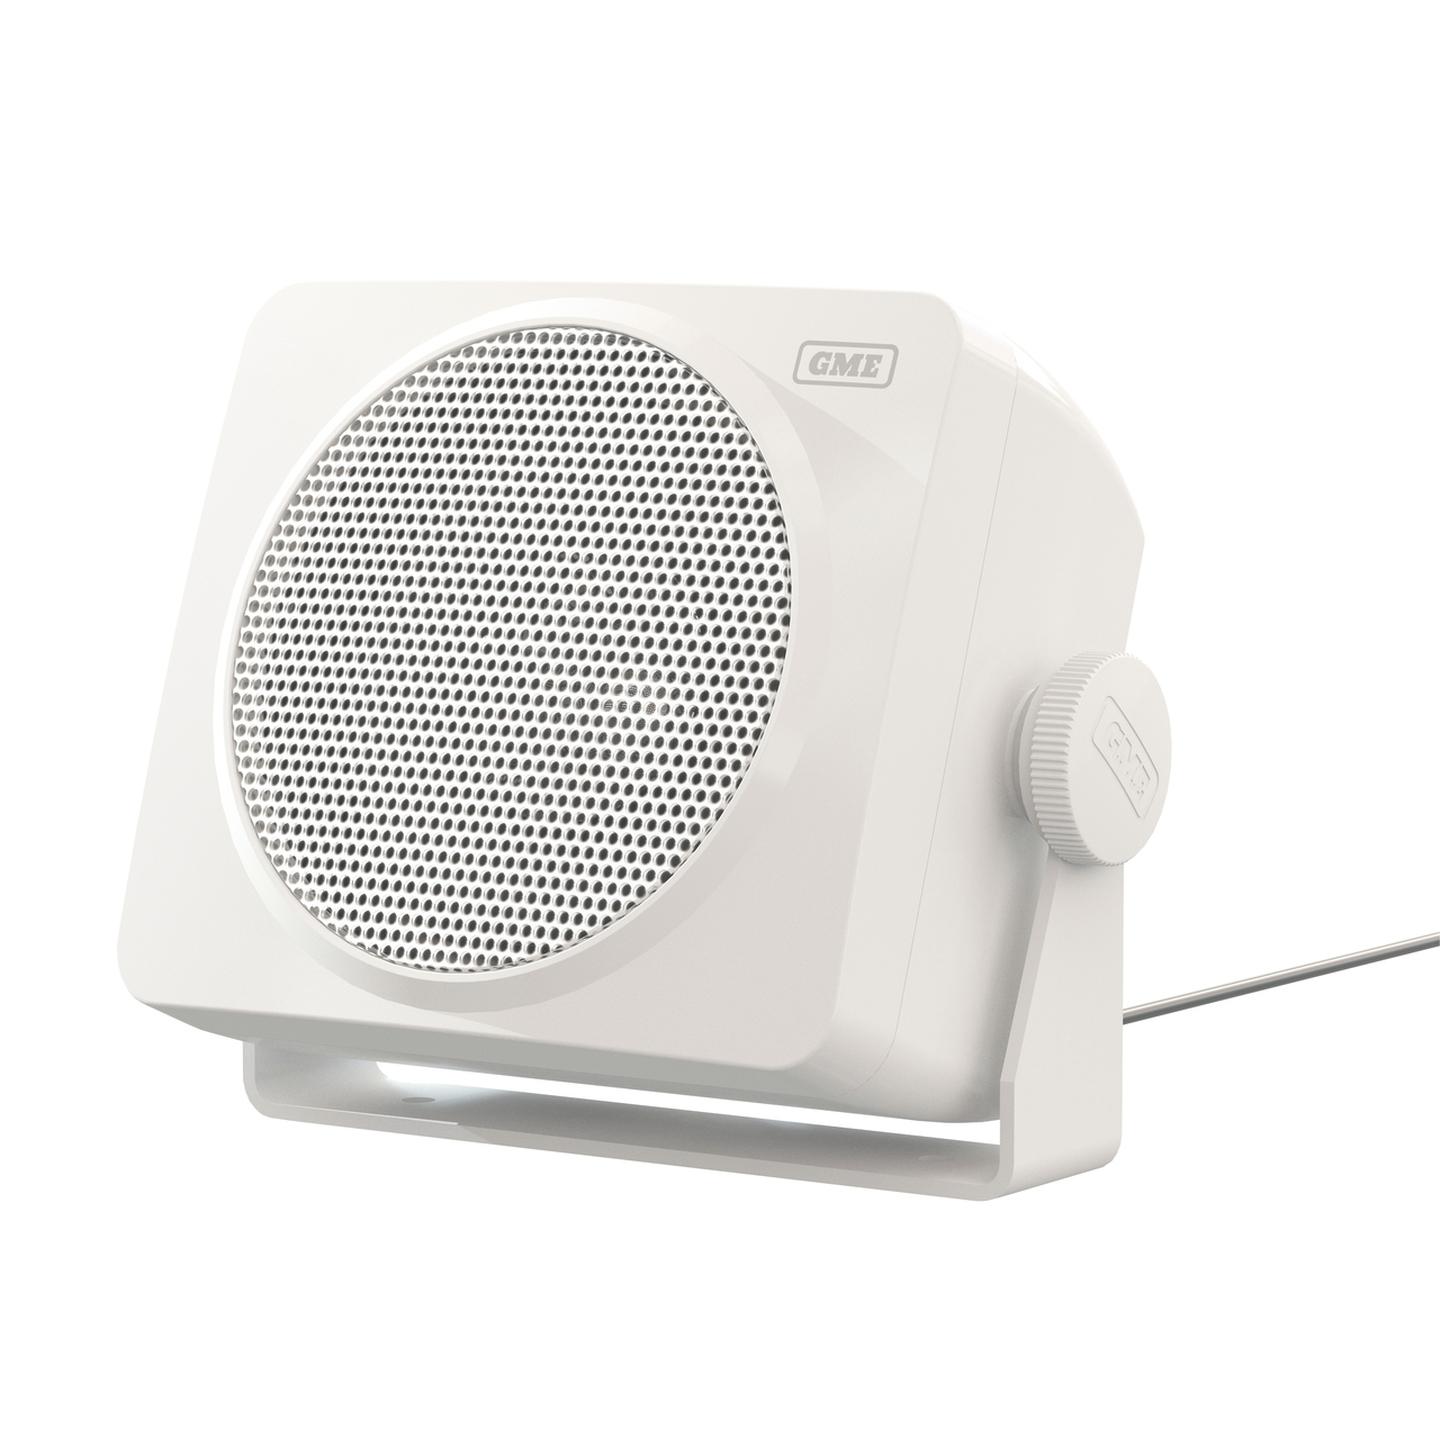 GME 60 Watt IP54 Marine Box Speakers - 110 x 100mm Pair - White